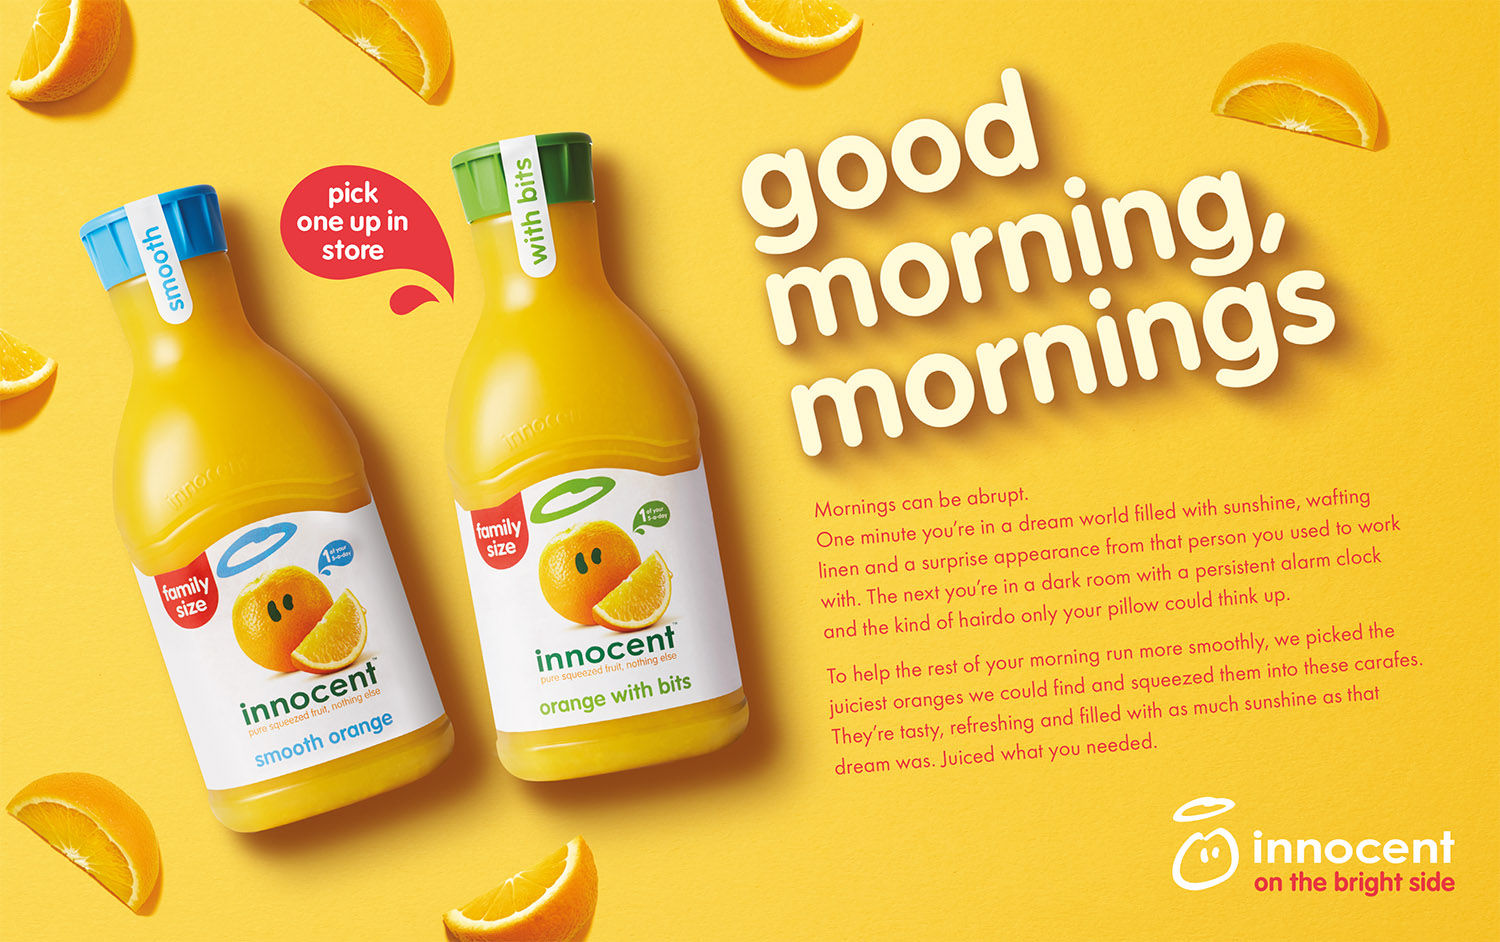 an advert for innocent orange juice